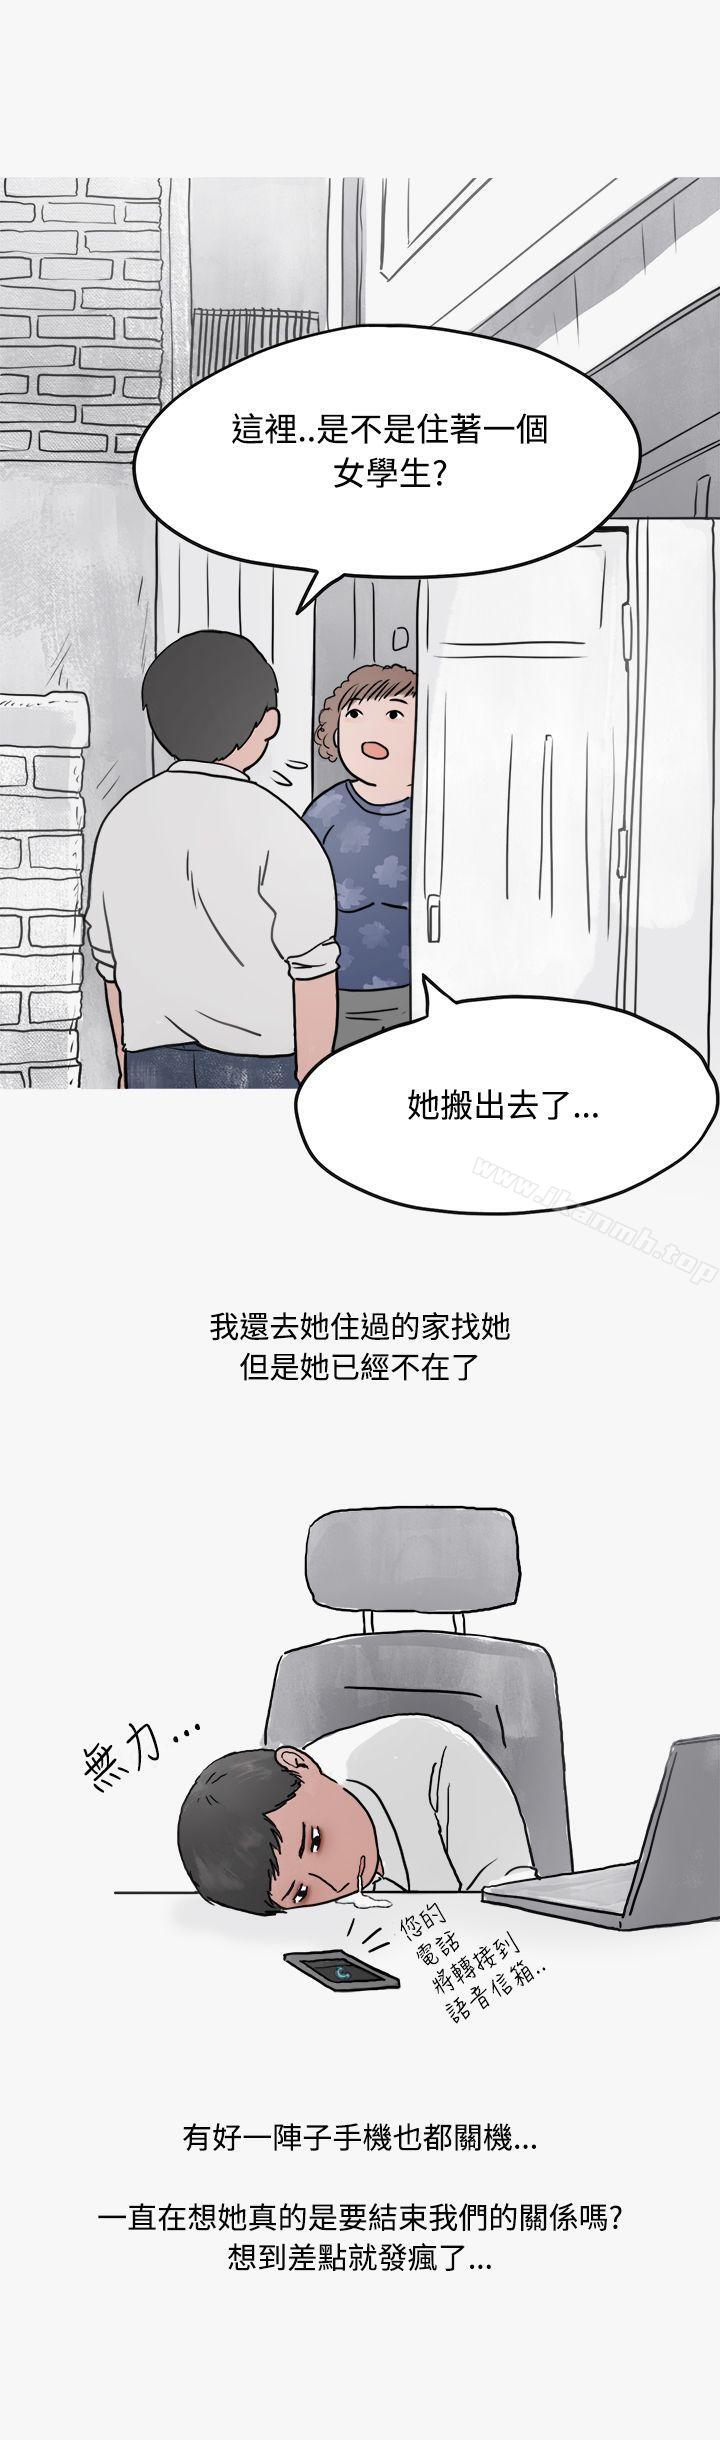 漫画韩国 秘密Story第二季   - 立即阅读 第二季 看條件交往的清純女(中)第30漫画图片